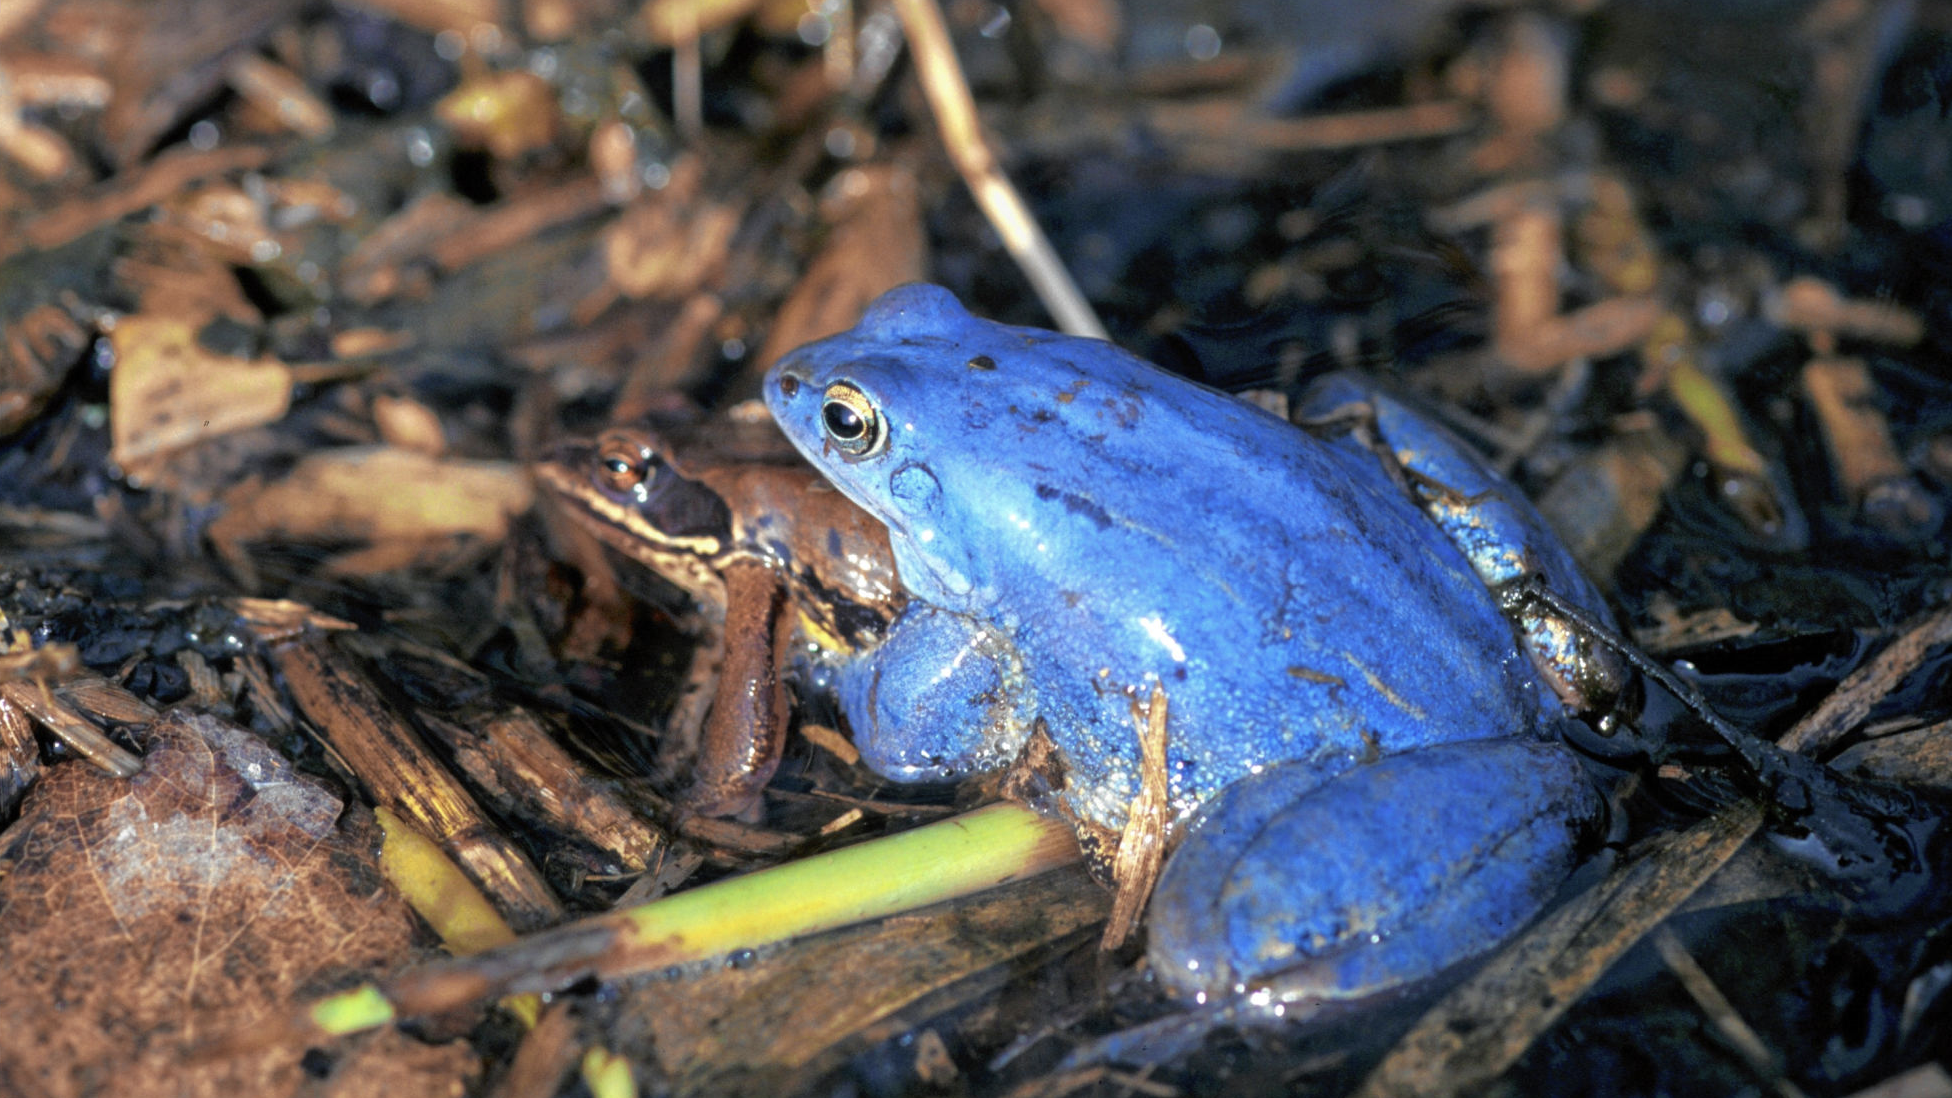 Ein blaues Froschmännchen. (Bild: Dietmar Streitmaier)